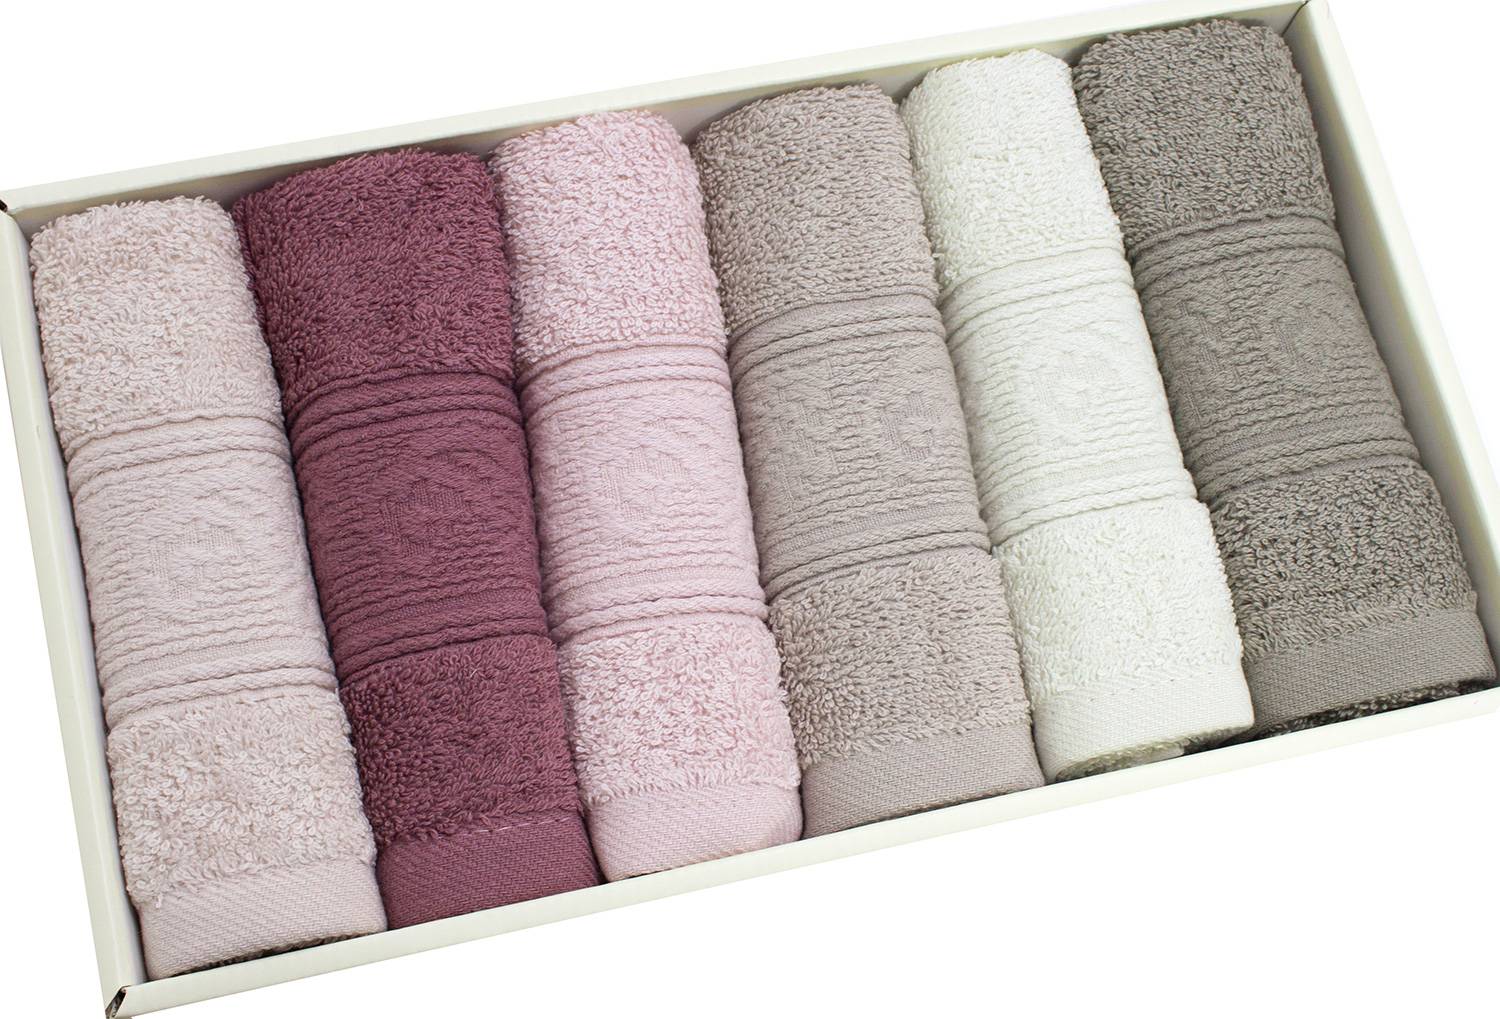 Как выбрать полотенце (7 важных правил при покупке полотенца!)